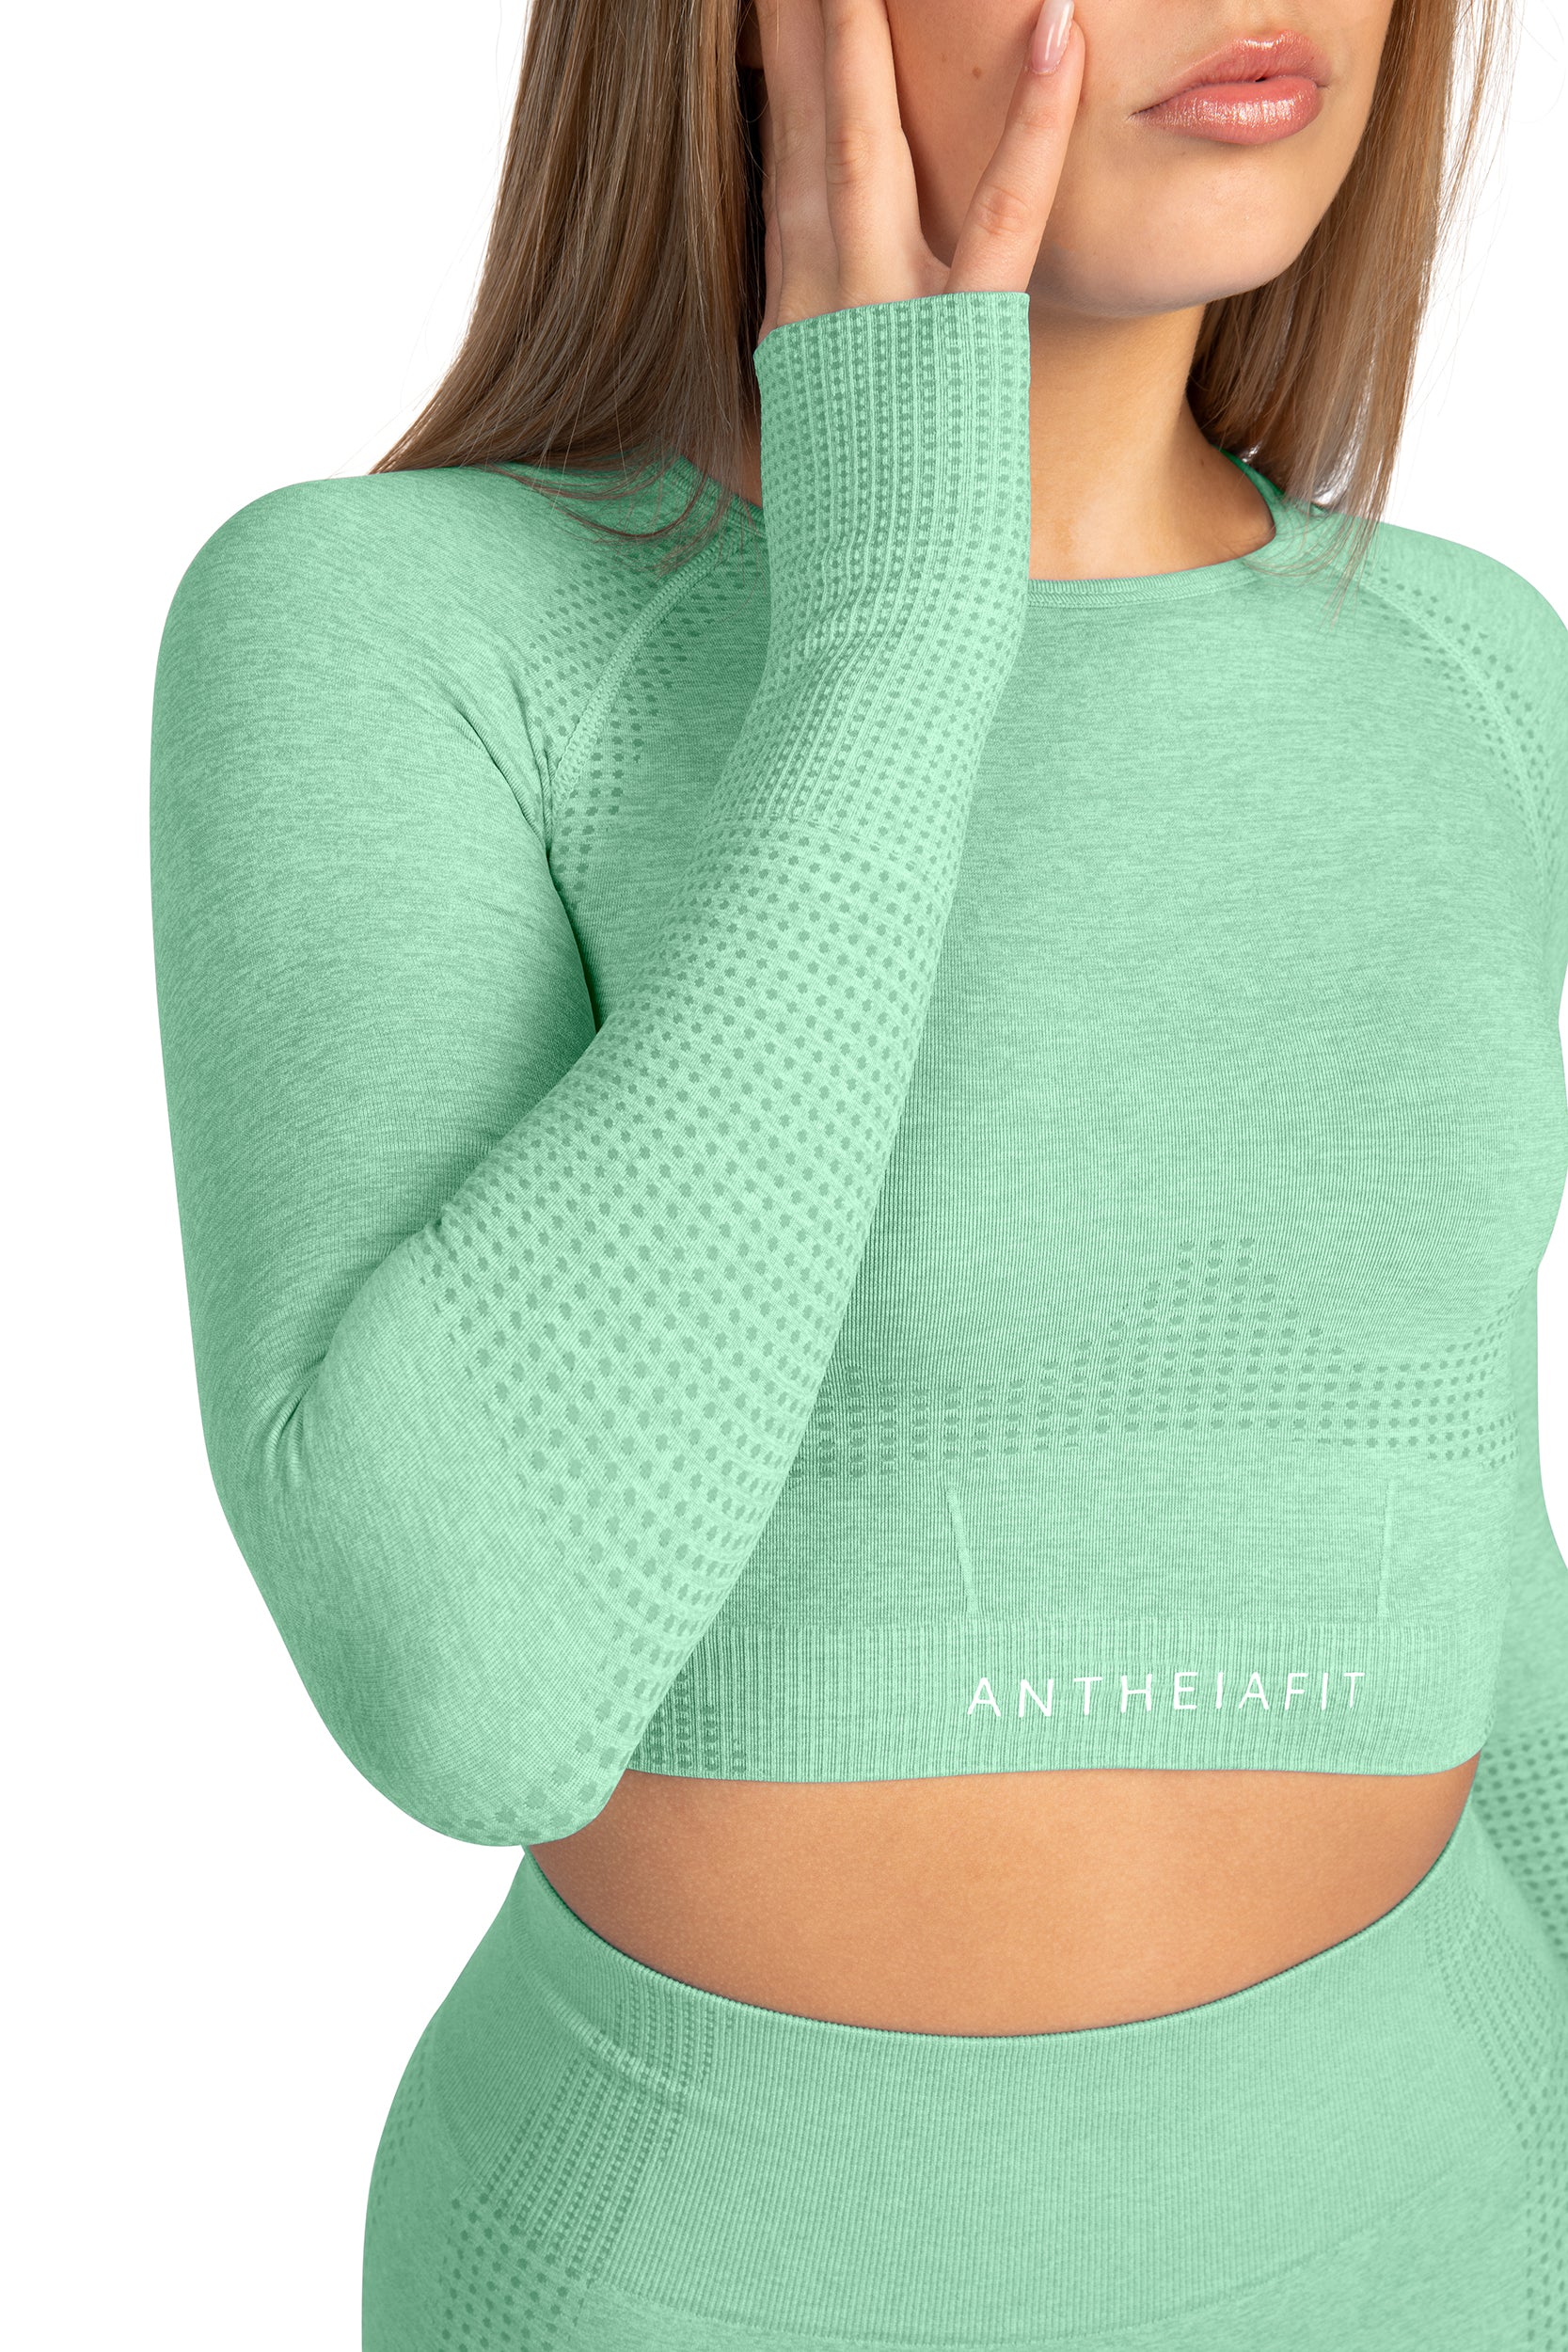 Seamless Long Sleeve Top Mint Green – antheiafit